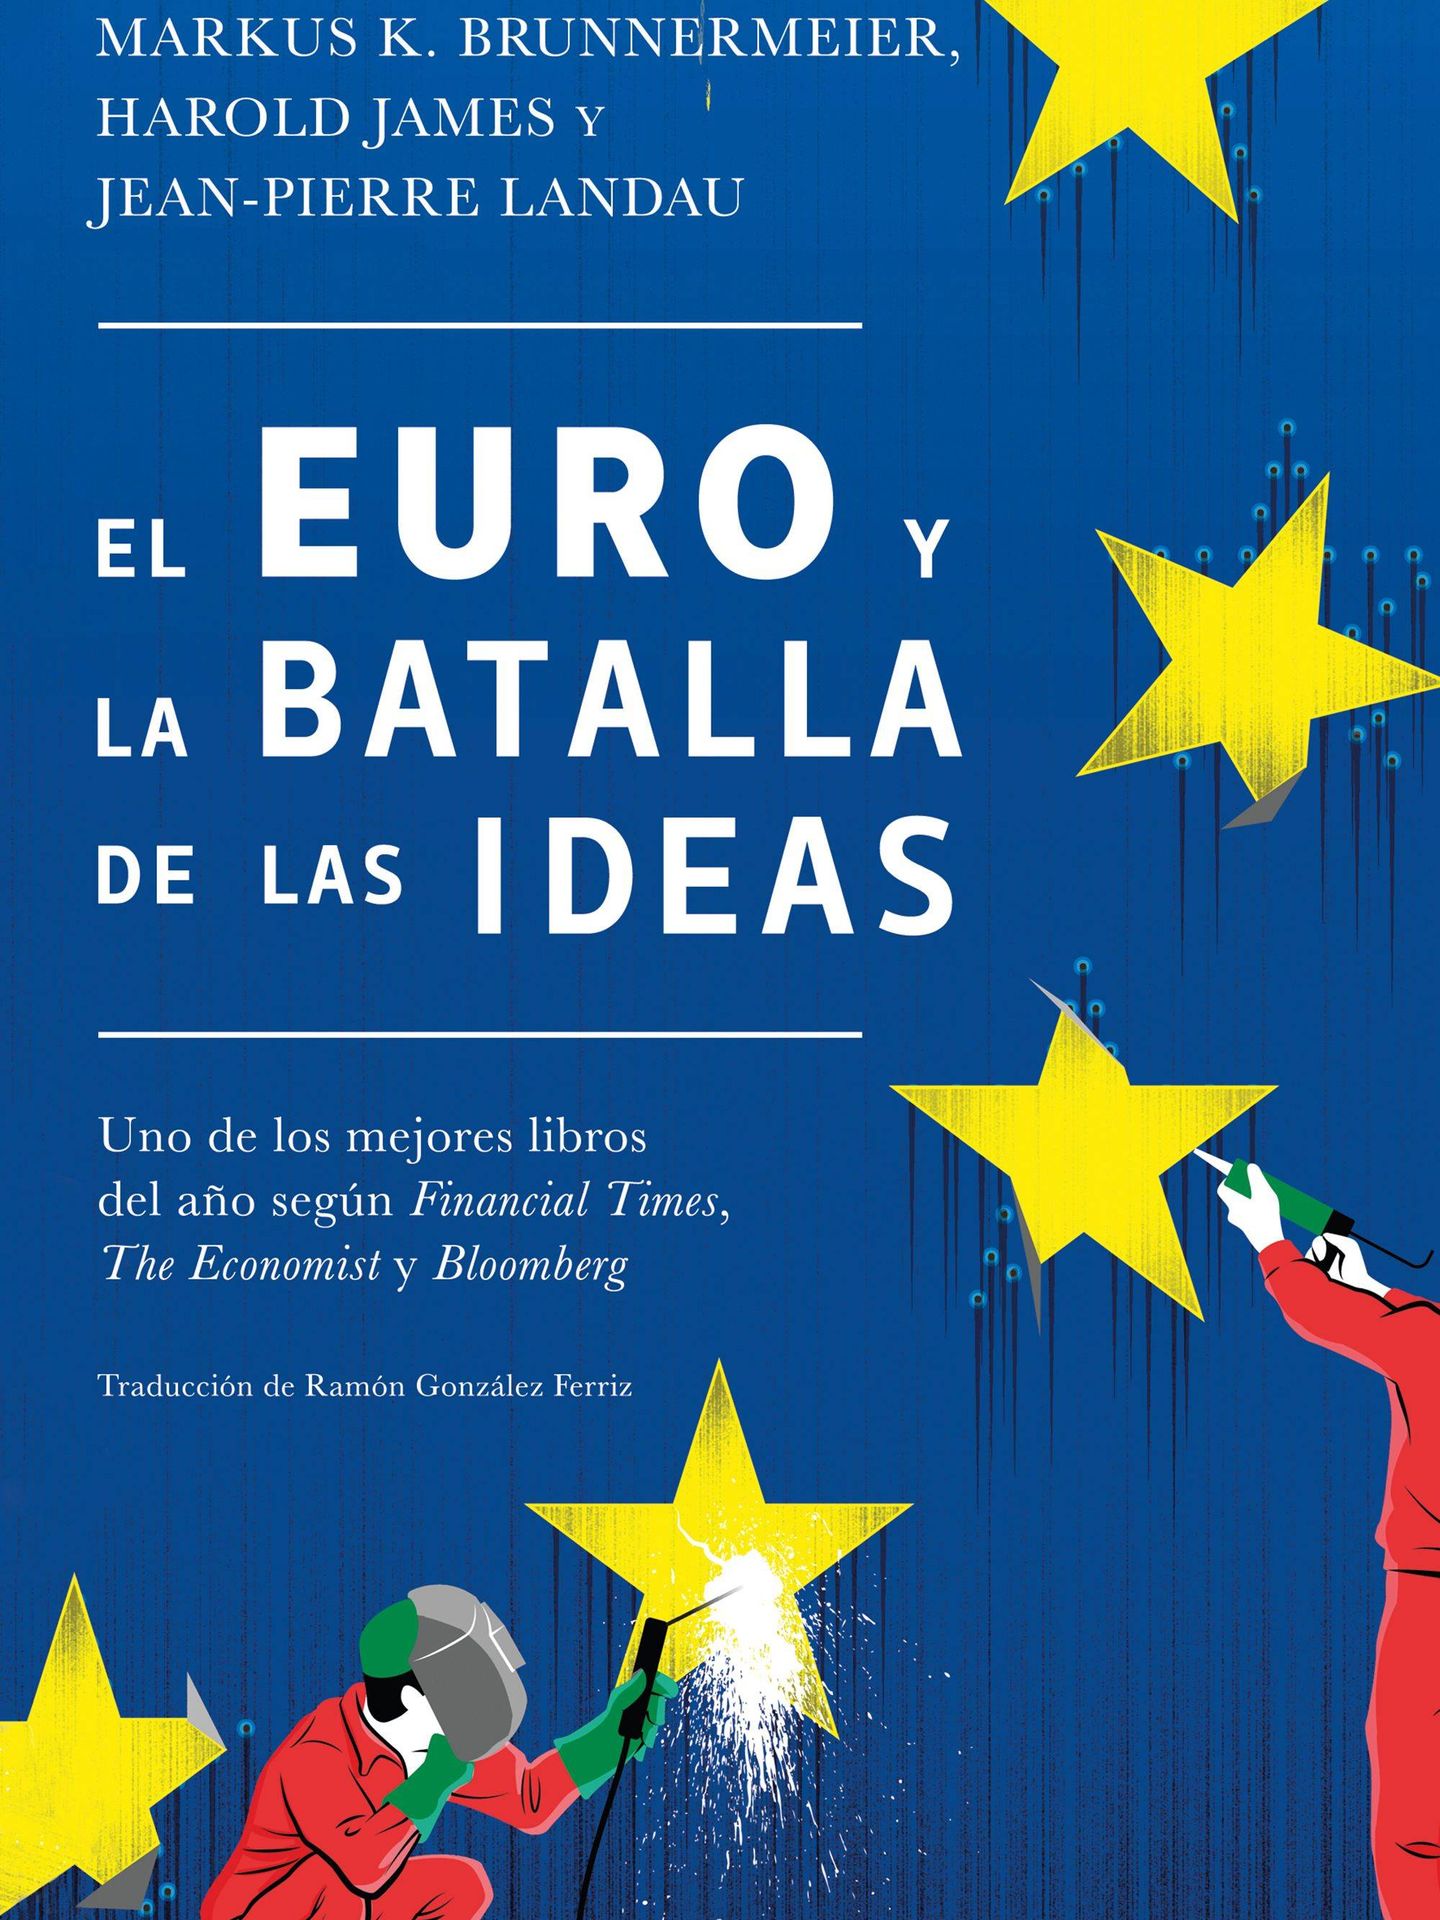 'El euro y la batalla por las ideas'. (Deusto)